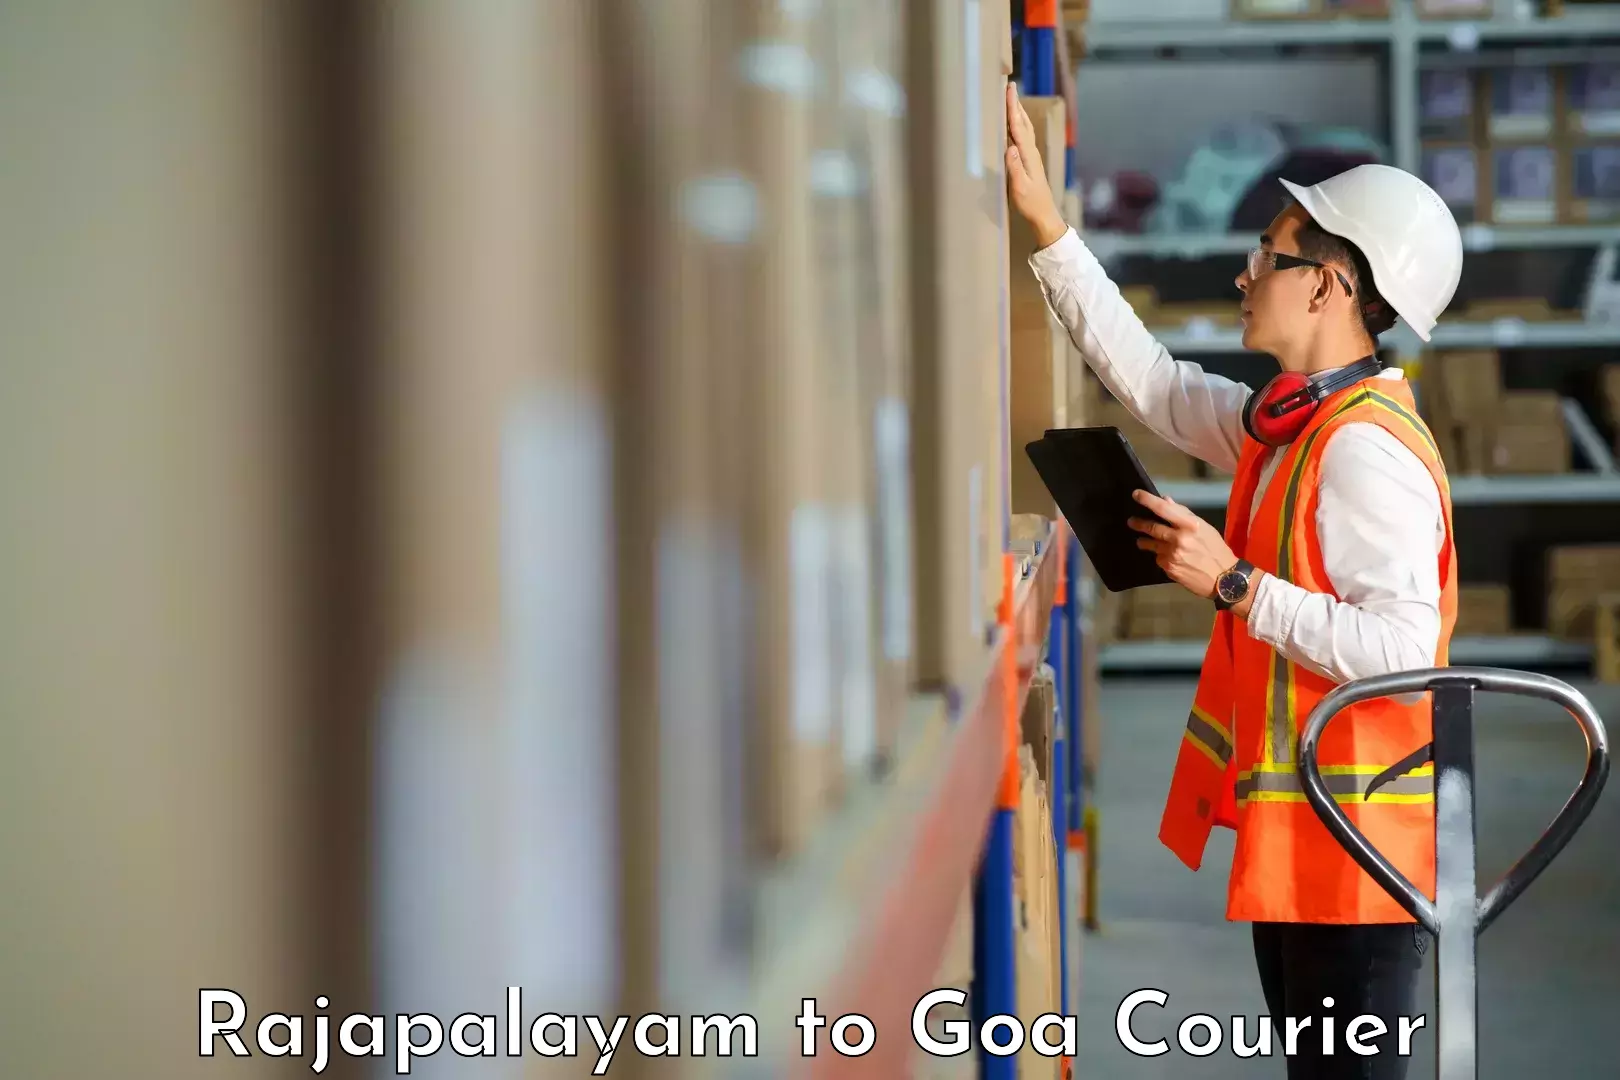 Digital courier platforms Rajapalayam to Goa